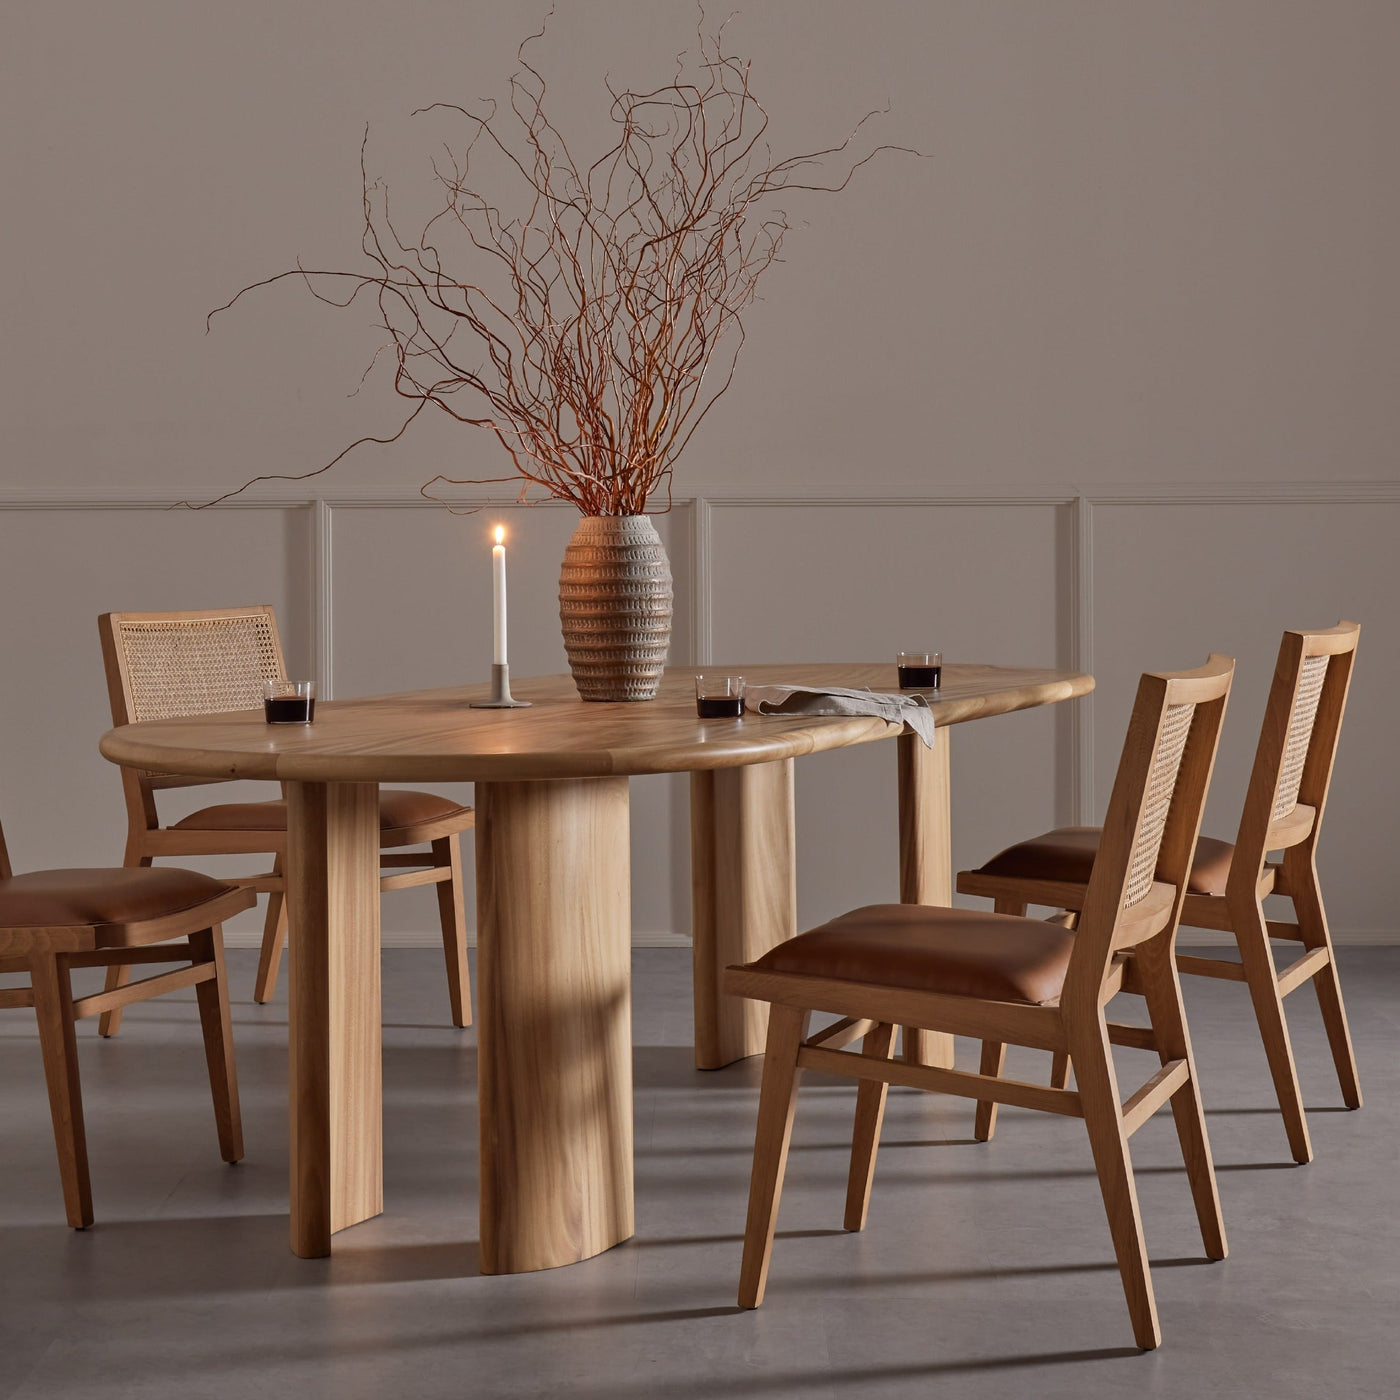 Meran Dining Chair - Showroom Model